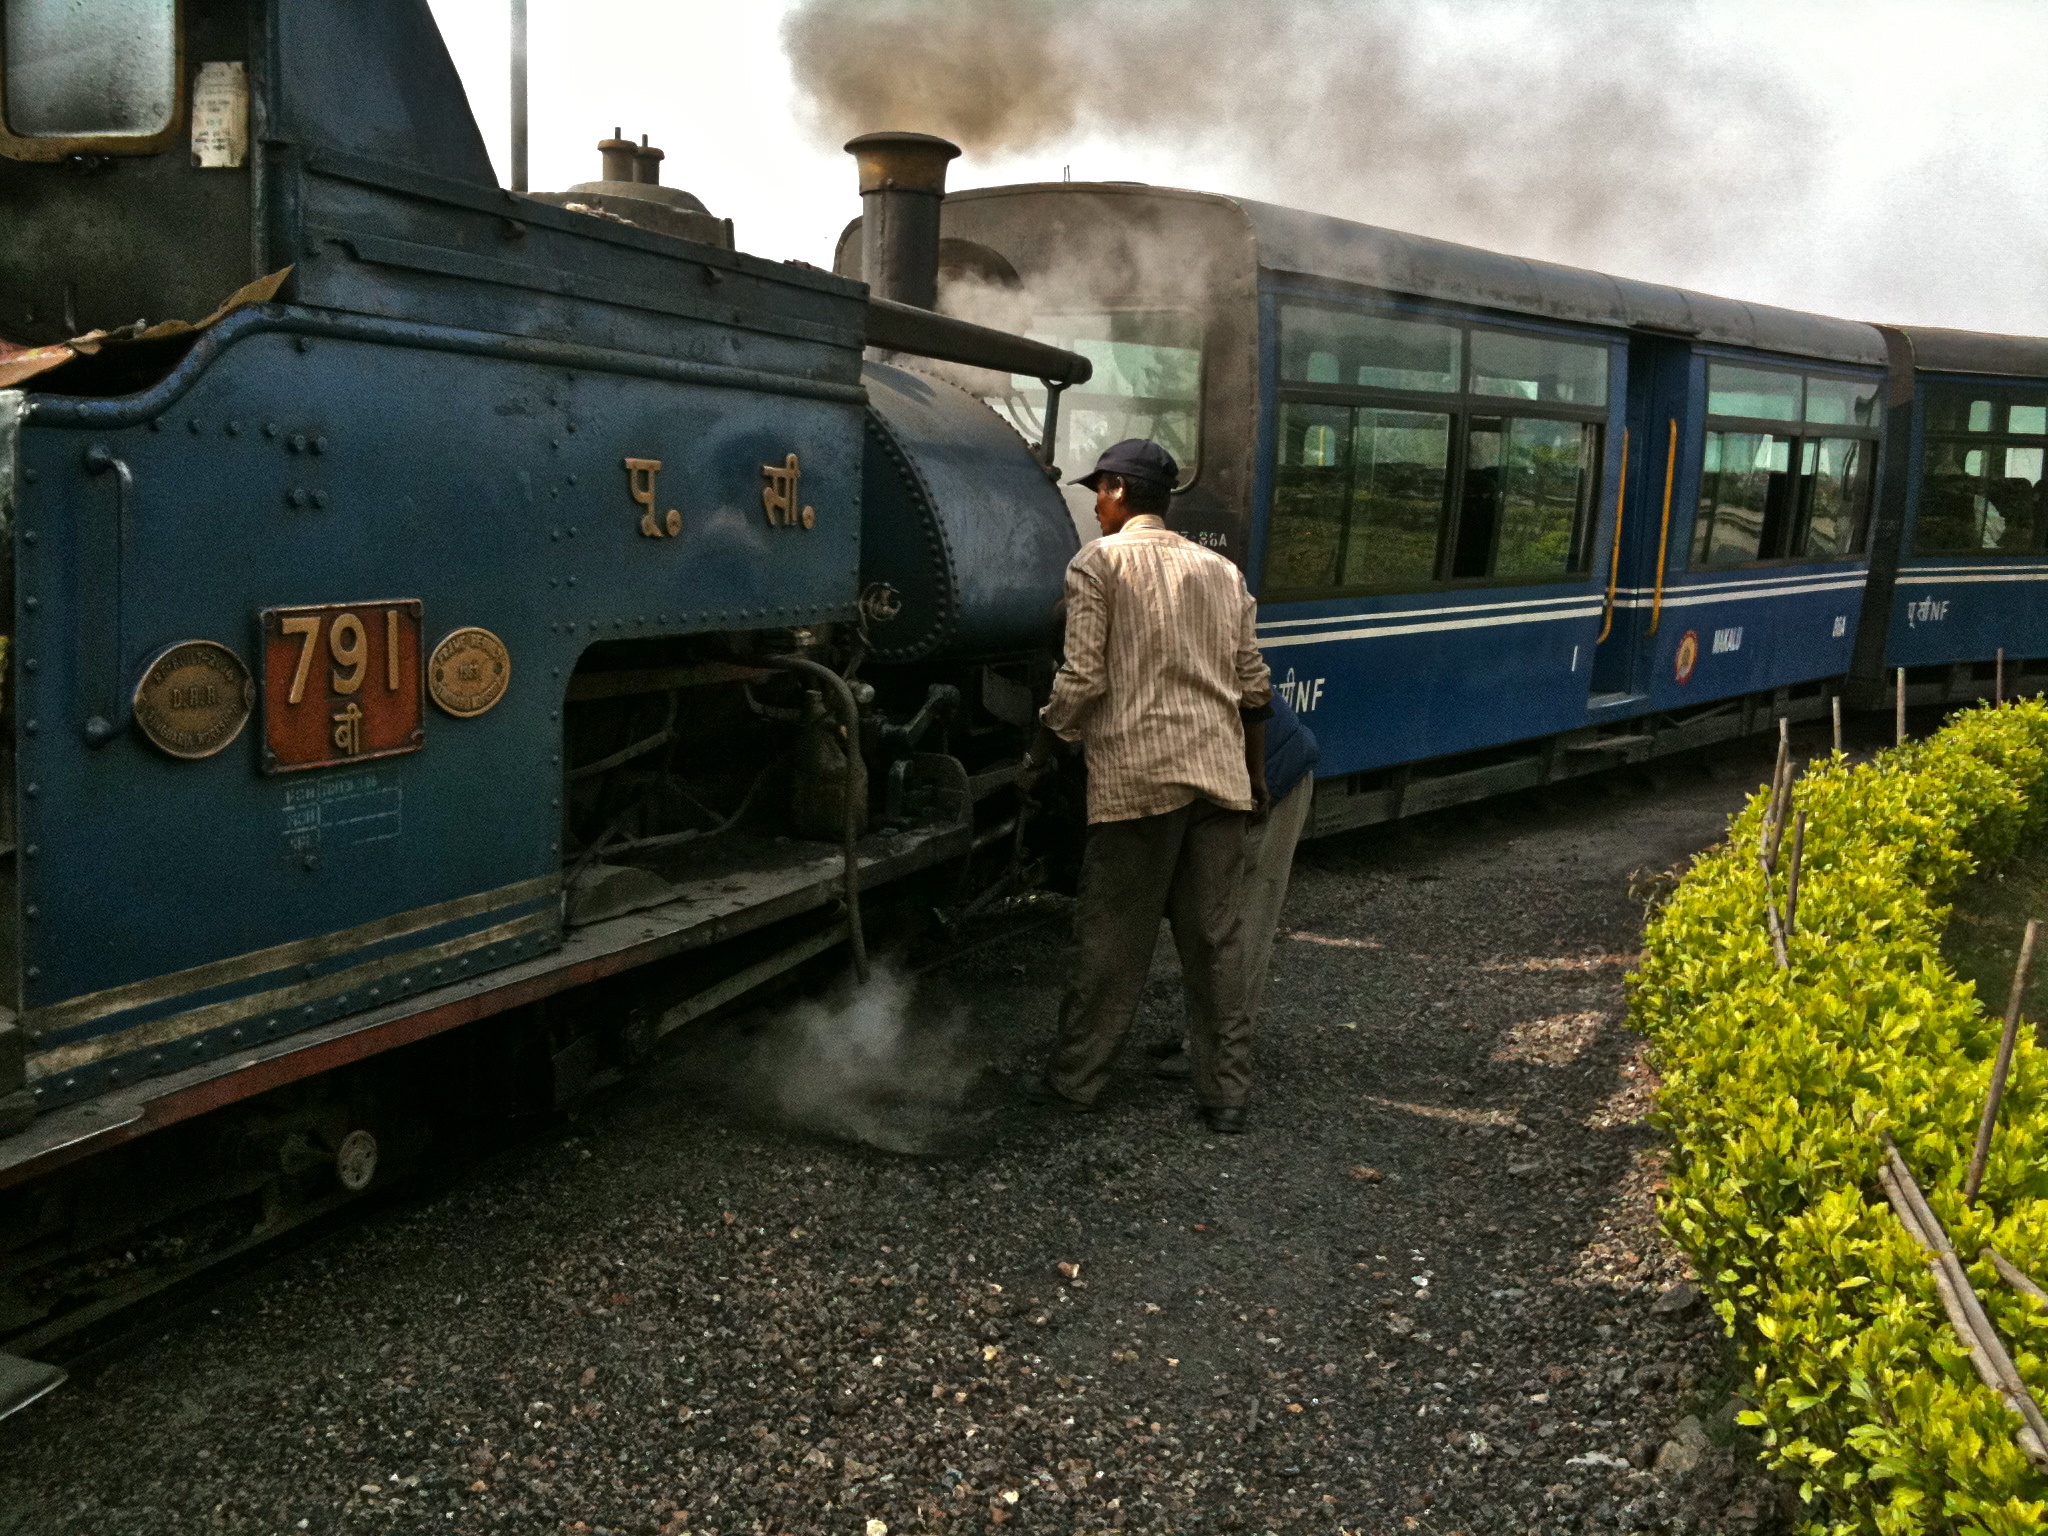 "Darjeeling Express" aka Toy Train